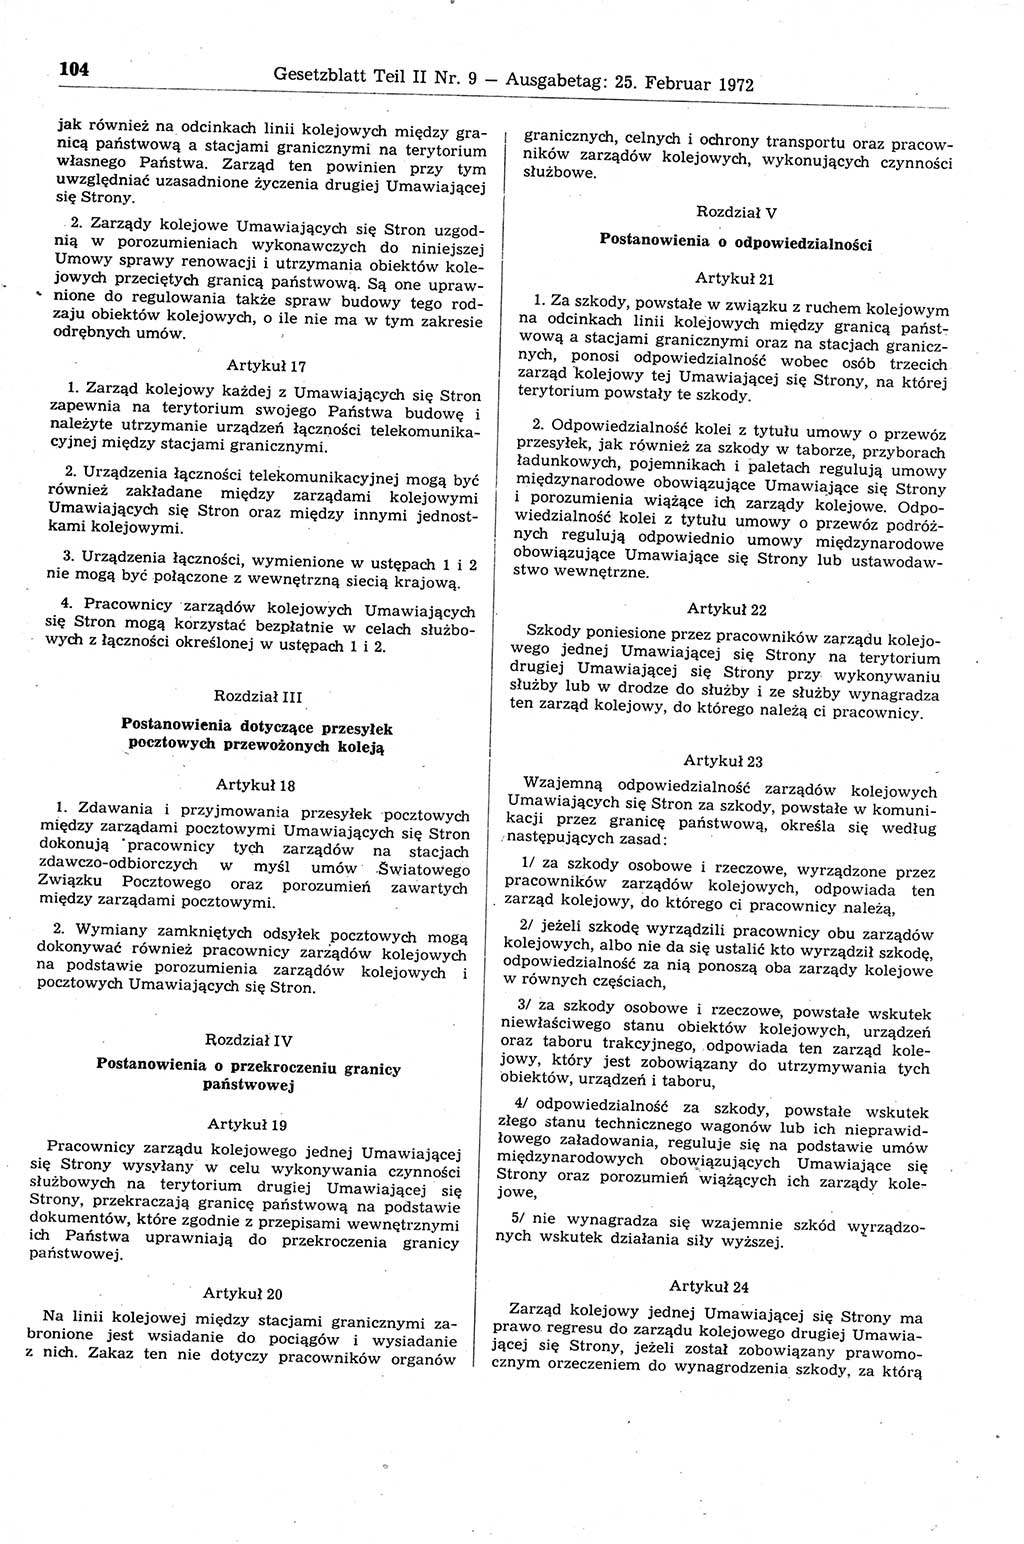 Gesetzblatt (GBl.) der Deutschen Demokratischen Republik (DDR) Teil ⅠⅠ 1972, Seite 104 (GBl. DDR ⅠⅠ 1972, S. 104)